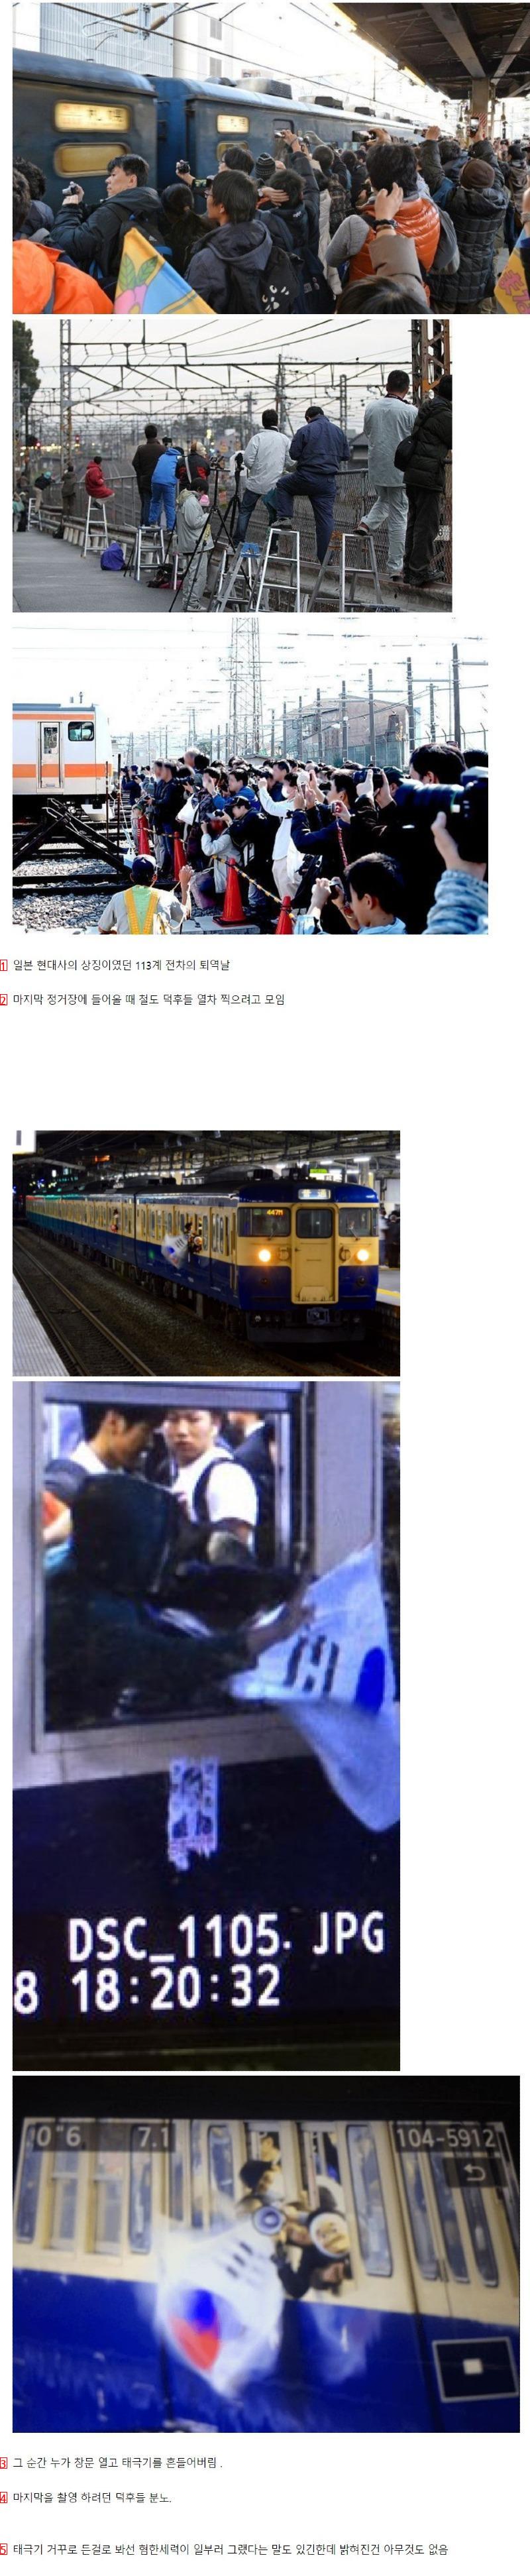 일본 철도 덕후들 분노했던 사건